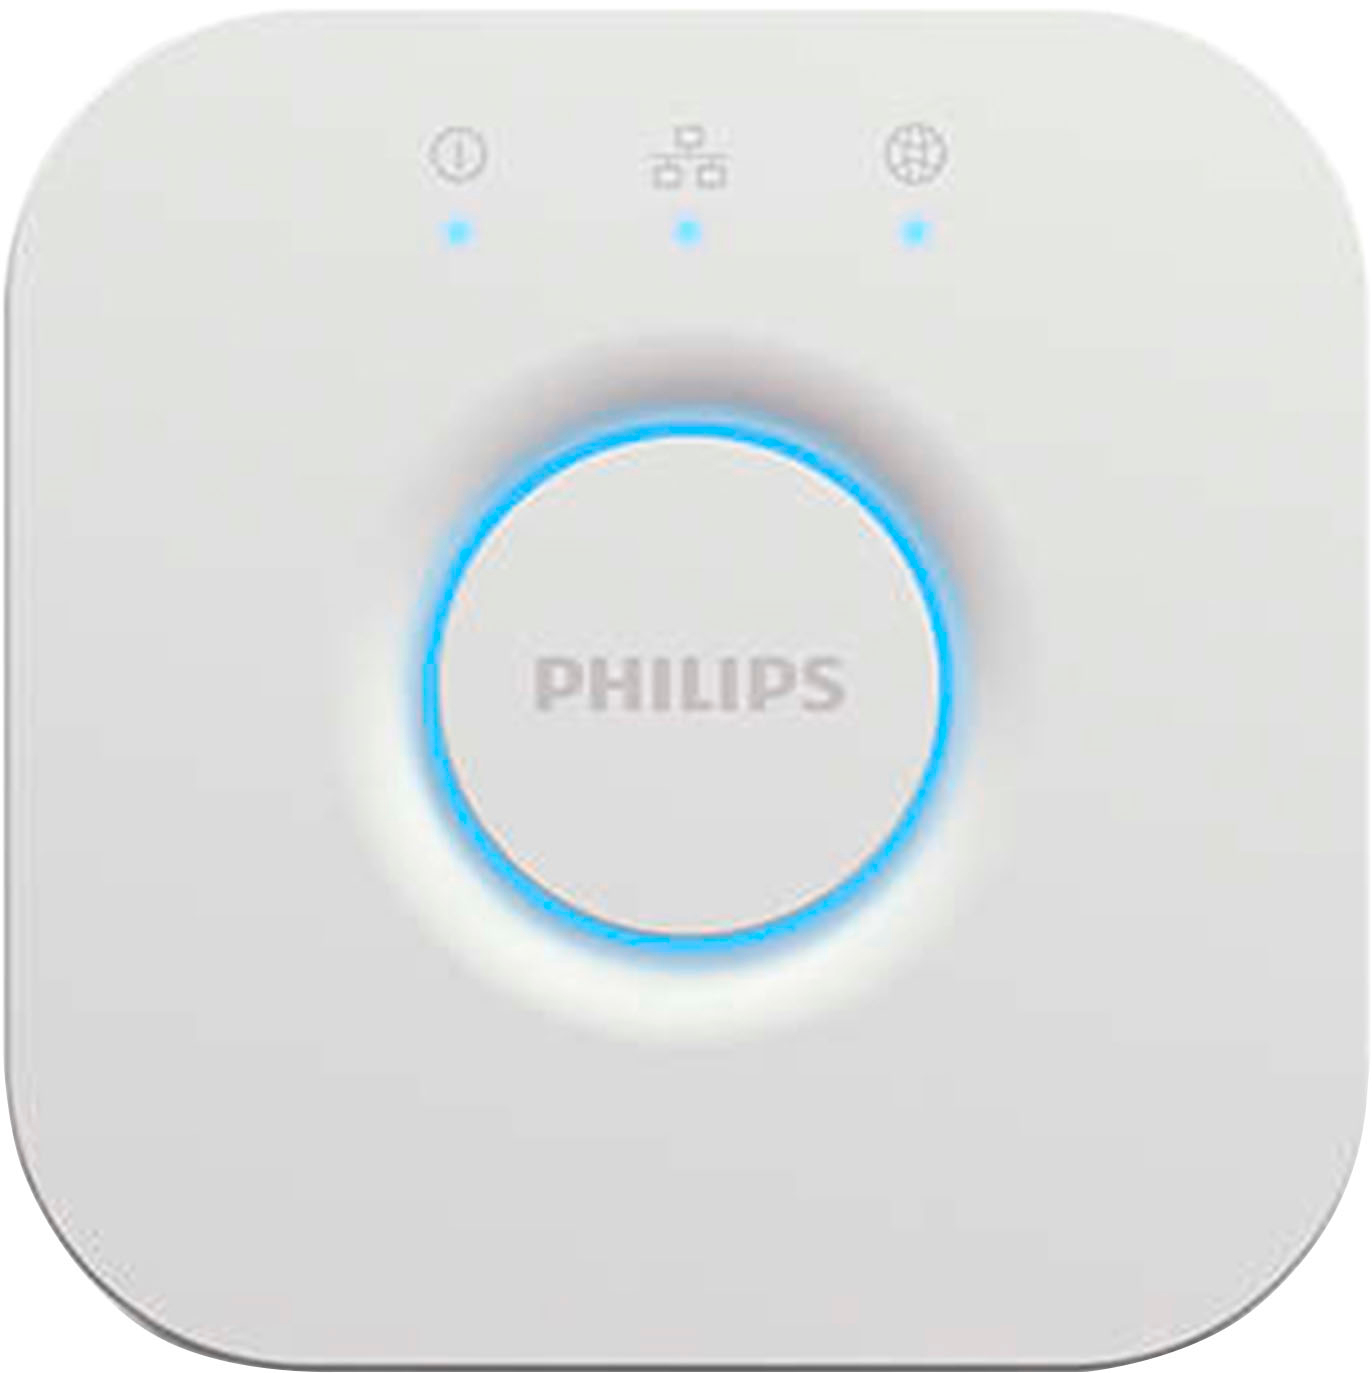 Philips Hue Bridge White 458471 - Best Buy